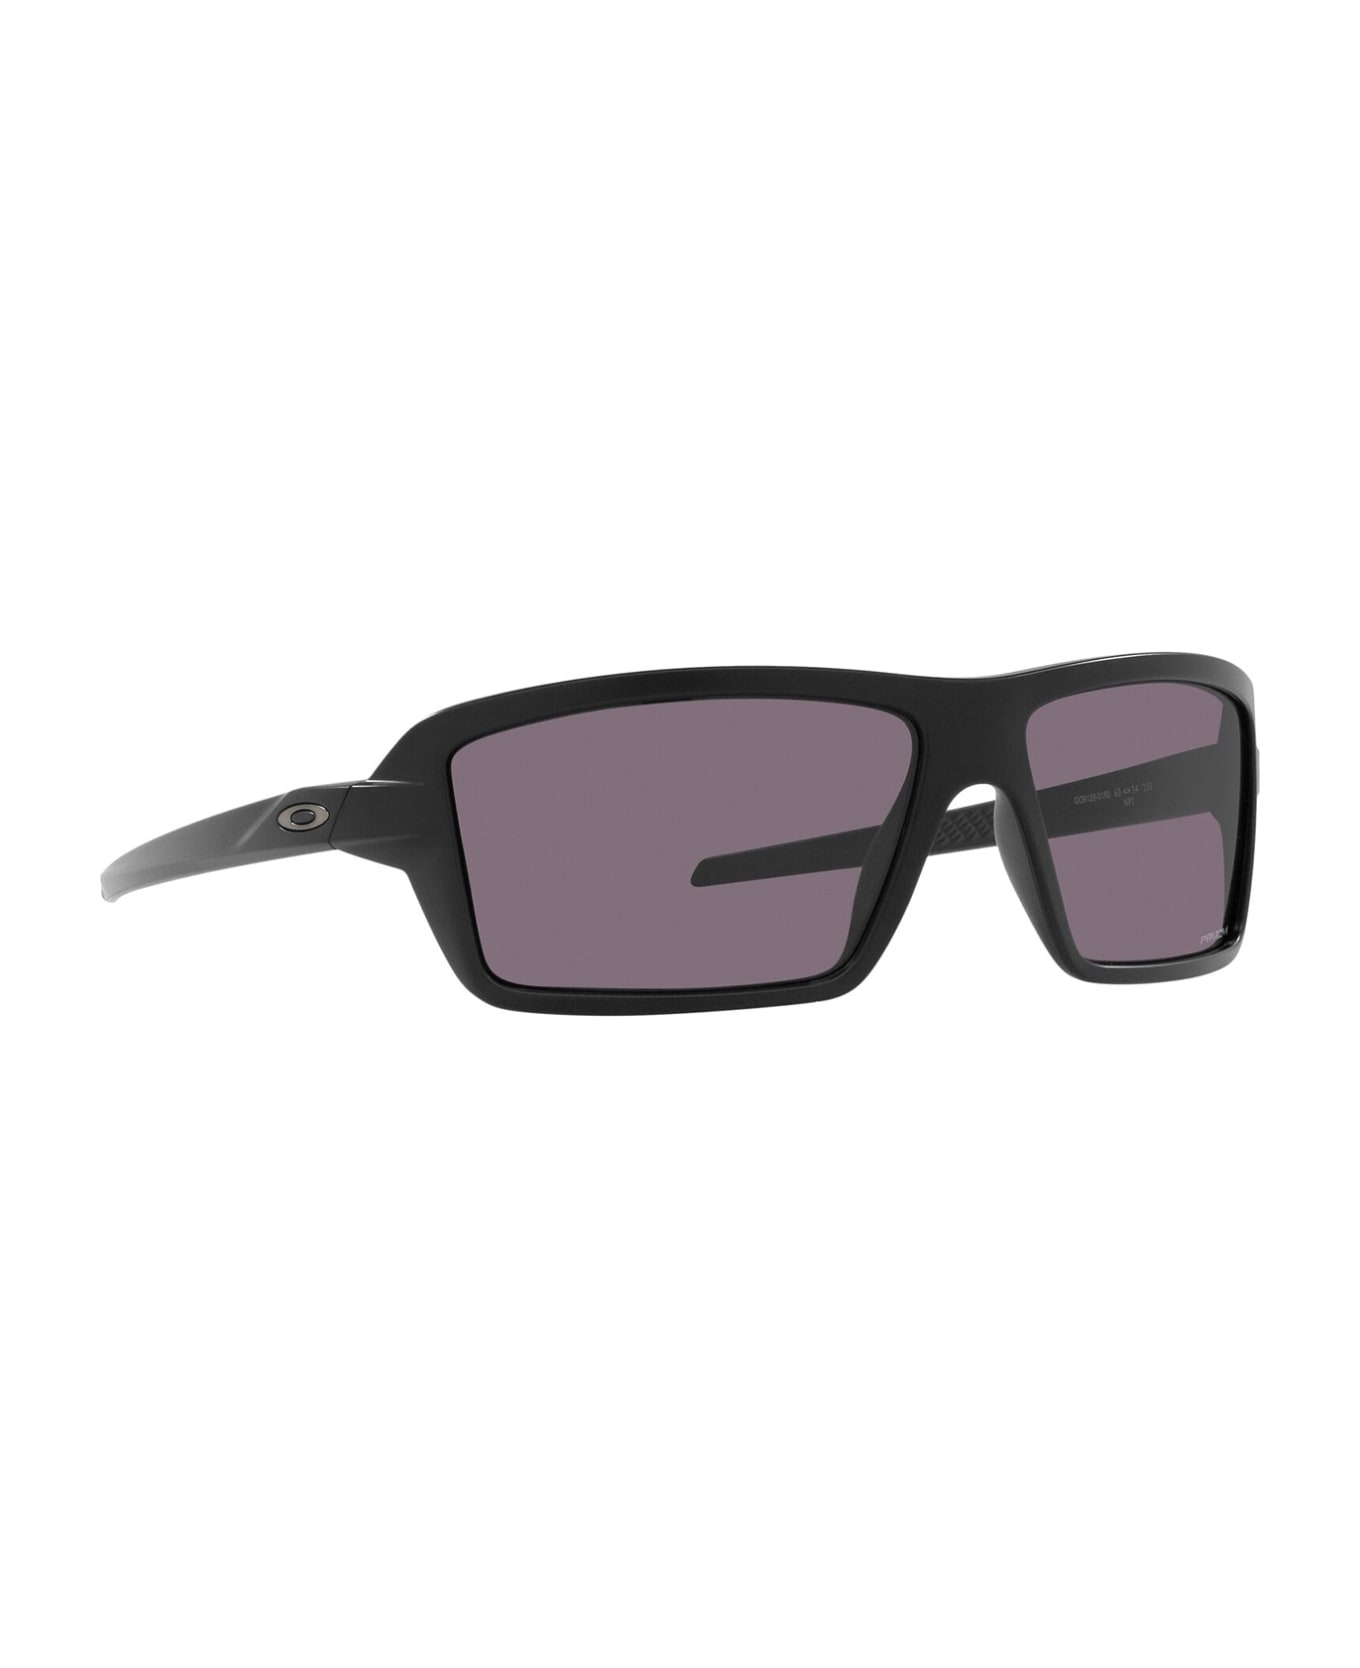 Oakley Oo9129 Matte Black Sunglasses - Matte Black